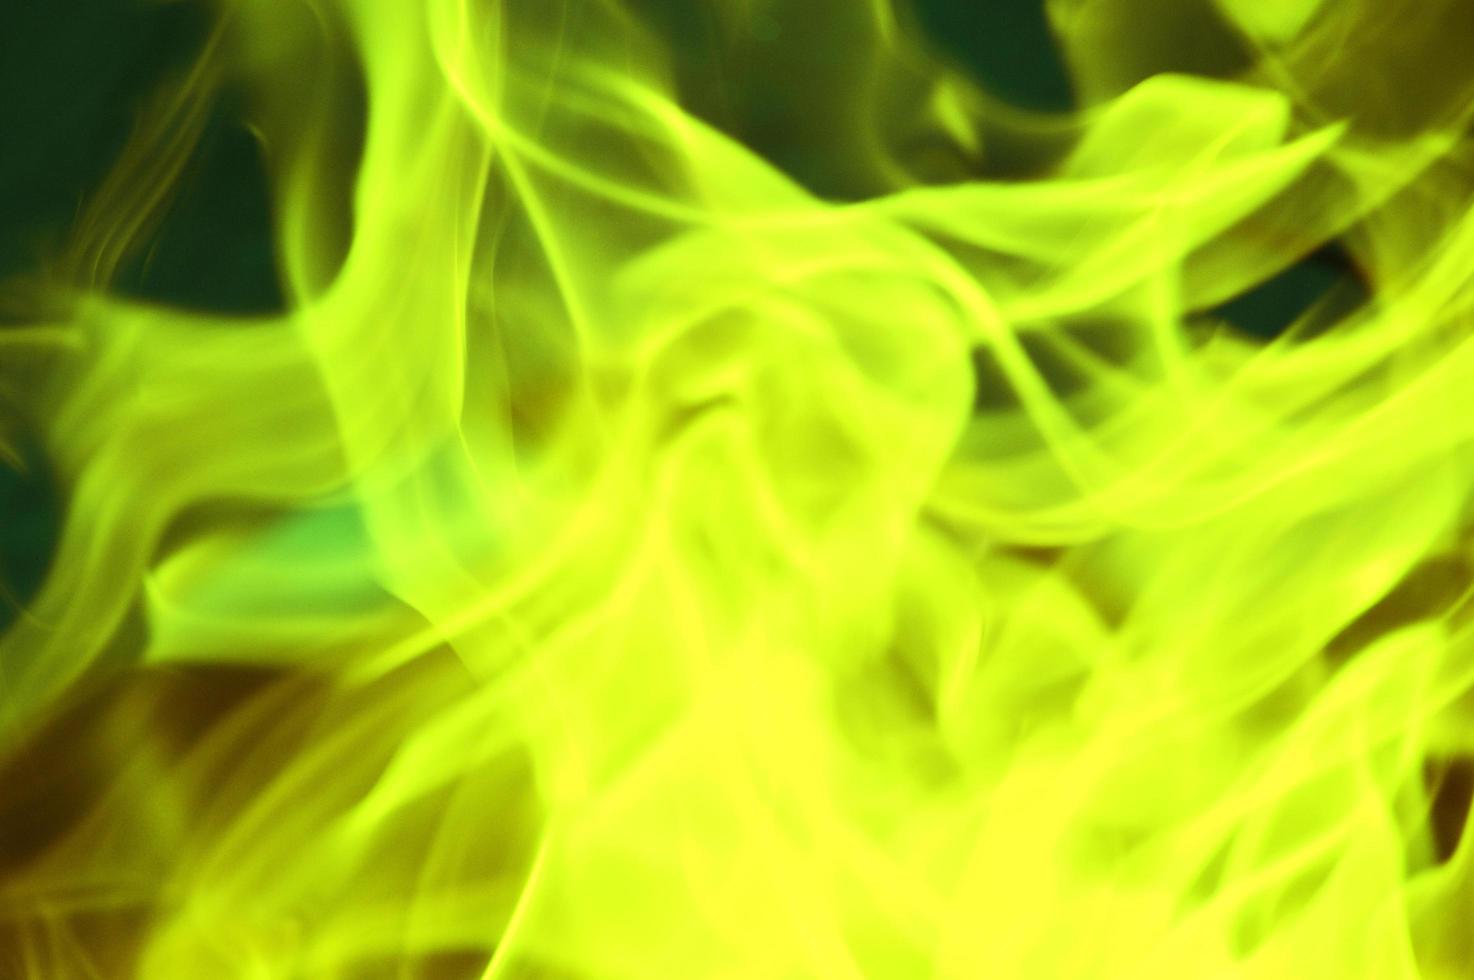 brilho verde e amarelo brilhante, chamas, fumaça colorida em um fundo escuro. fundo abstrato. foto